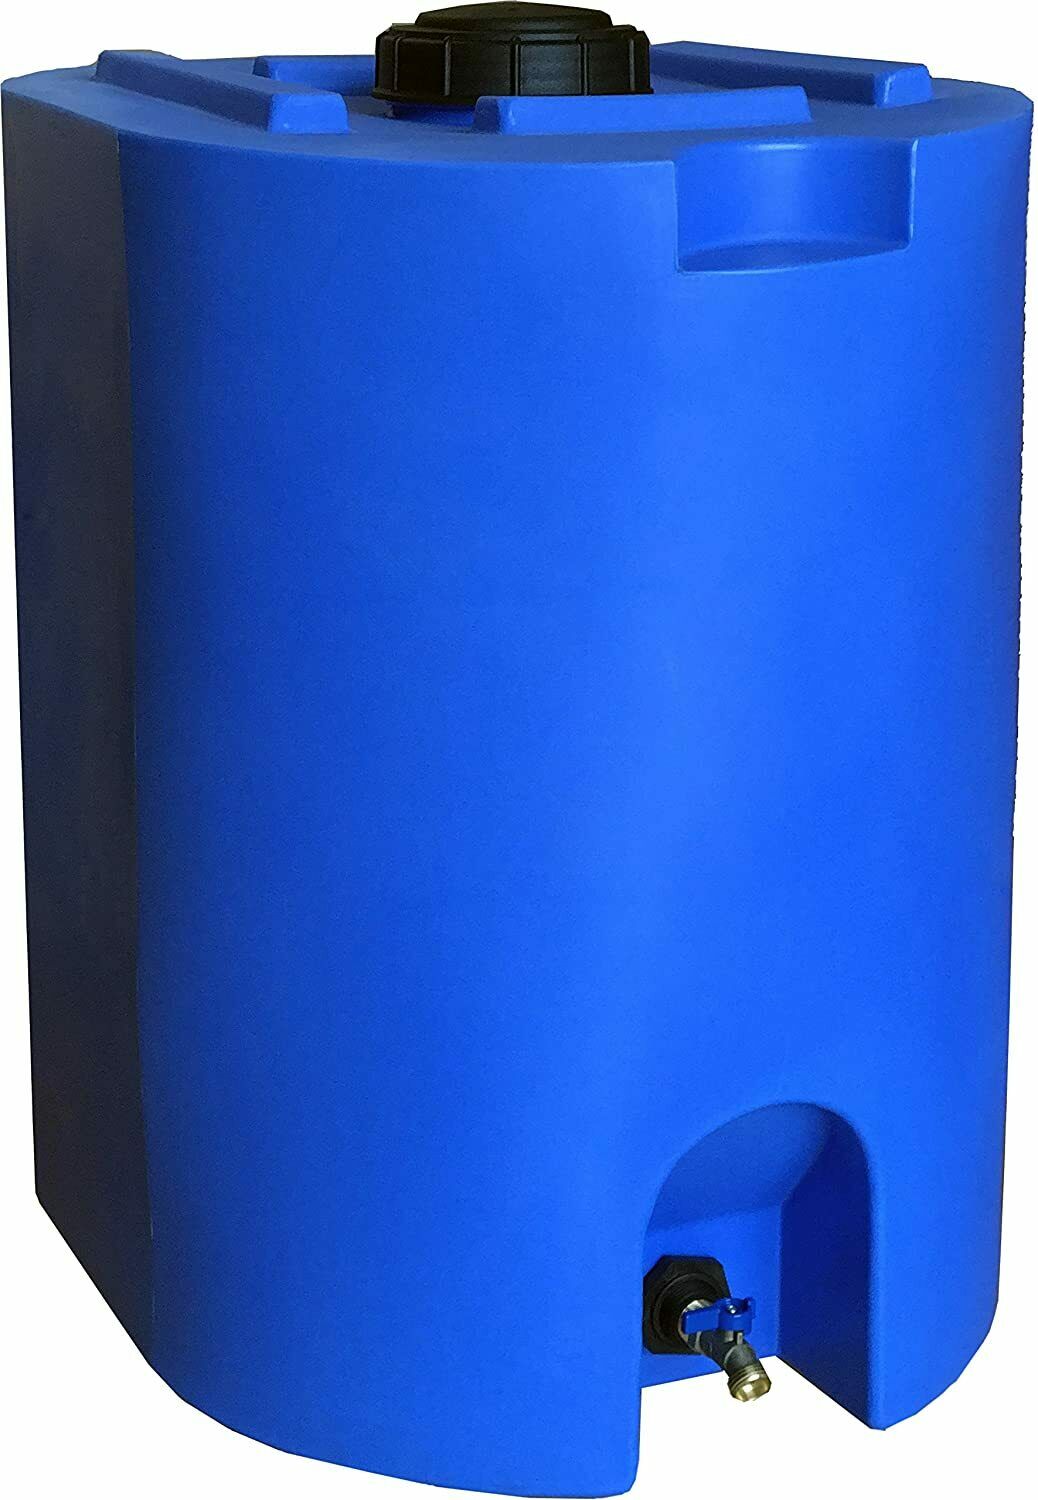 55 Gallon Water Storage Tank Barrel Drum Purified Water Large Plastic Bpa Free